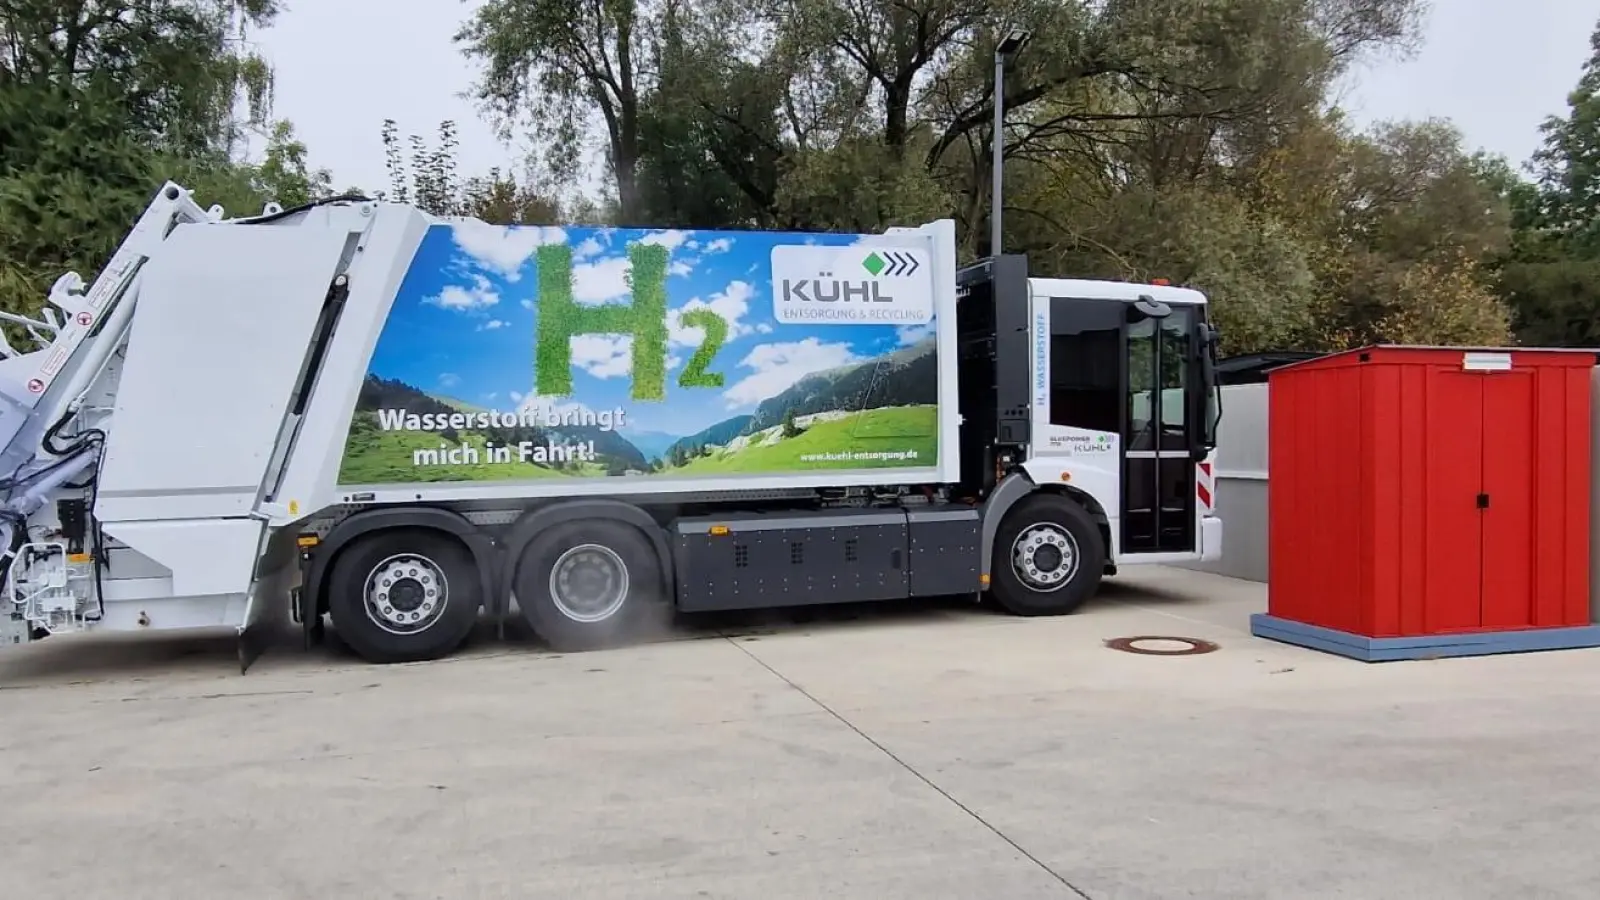 Das neue Müllauto wird über eine Wasserstoff-Brennstoffzelle elektrisch betrieben. (Foto:  Kühl Entsorgung & Recycling Süd GmbH)